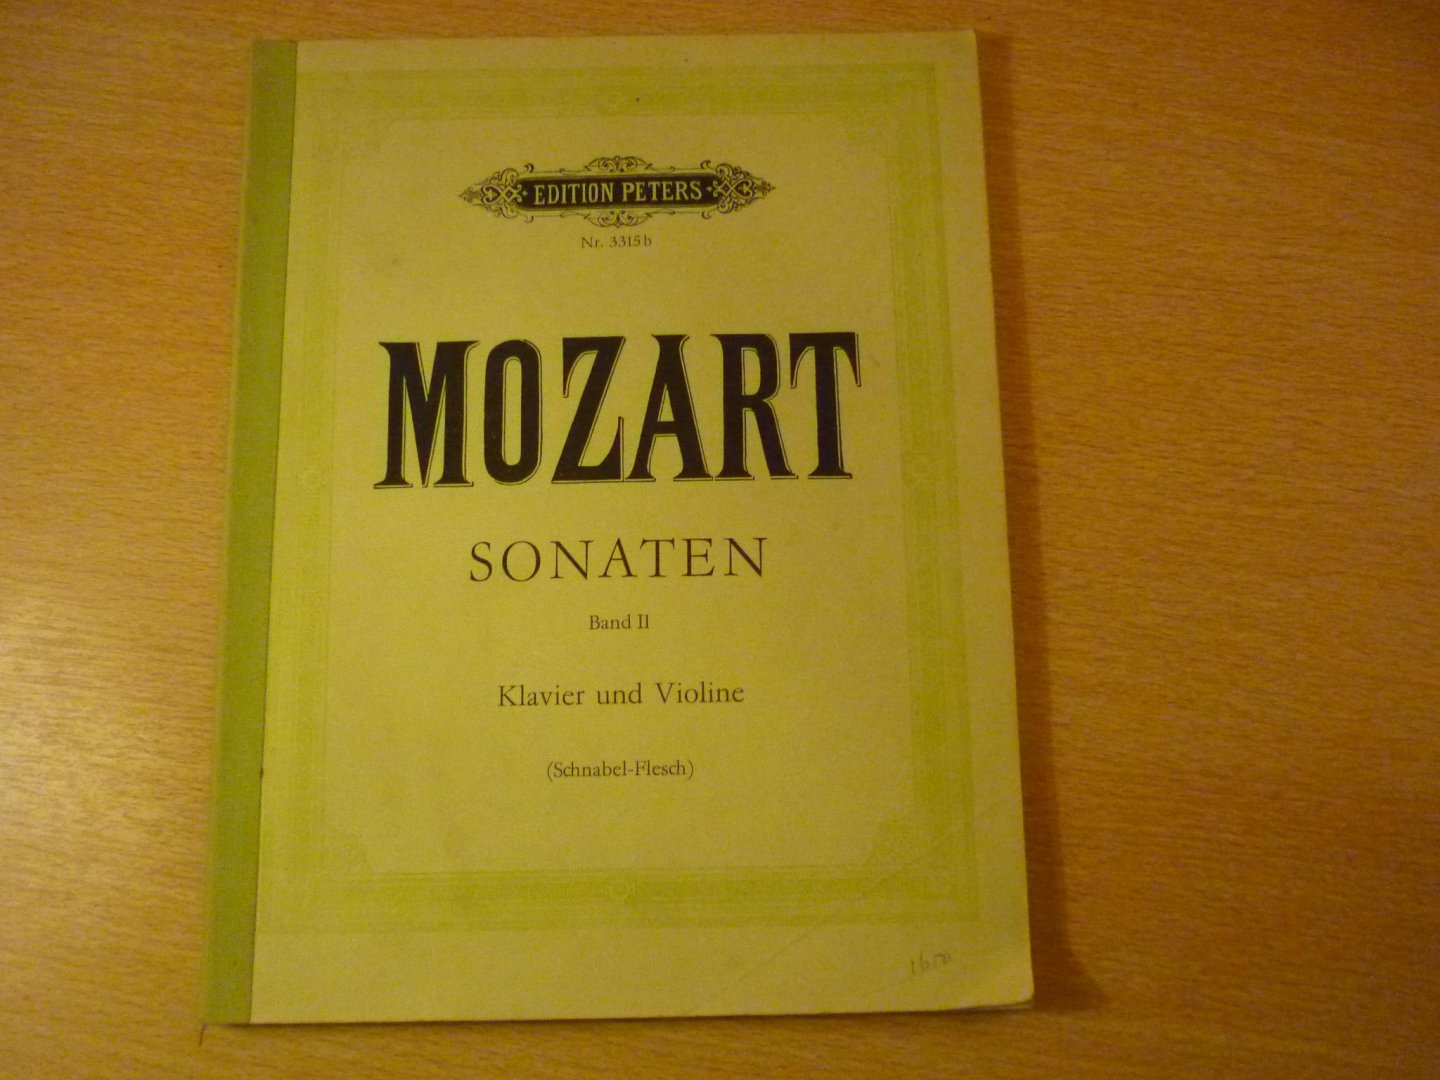 Mozart. W.A. (1756 – 1791) - Sonaten für Klavier und Violine - Band II - sonate 10 t/m. 19; (Arthur Schnabel und Carl Flesch)